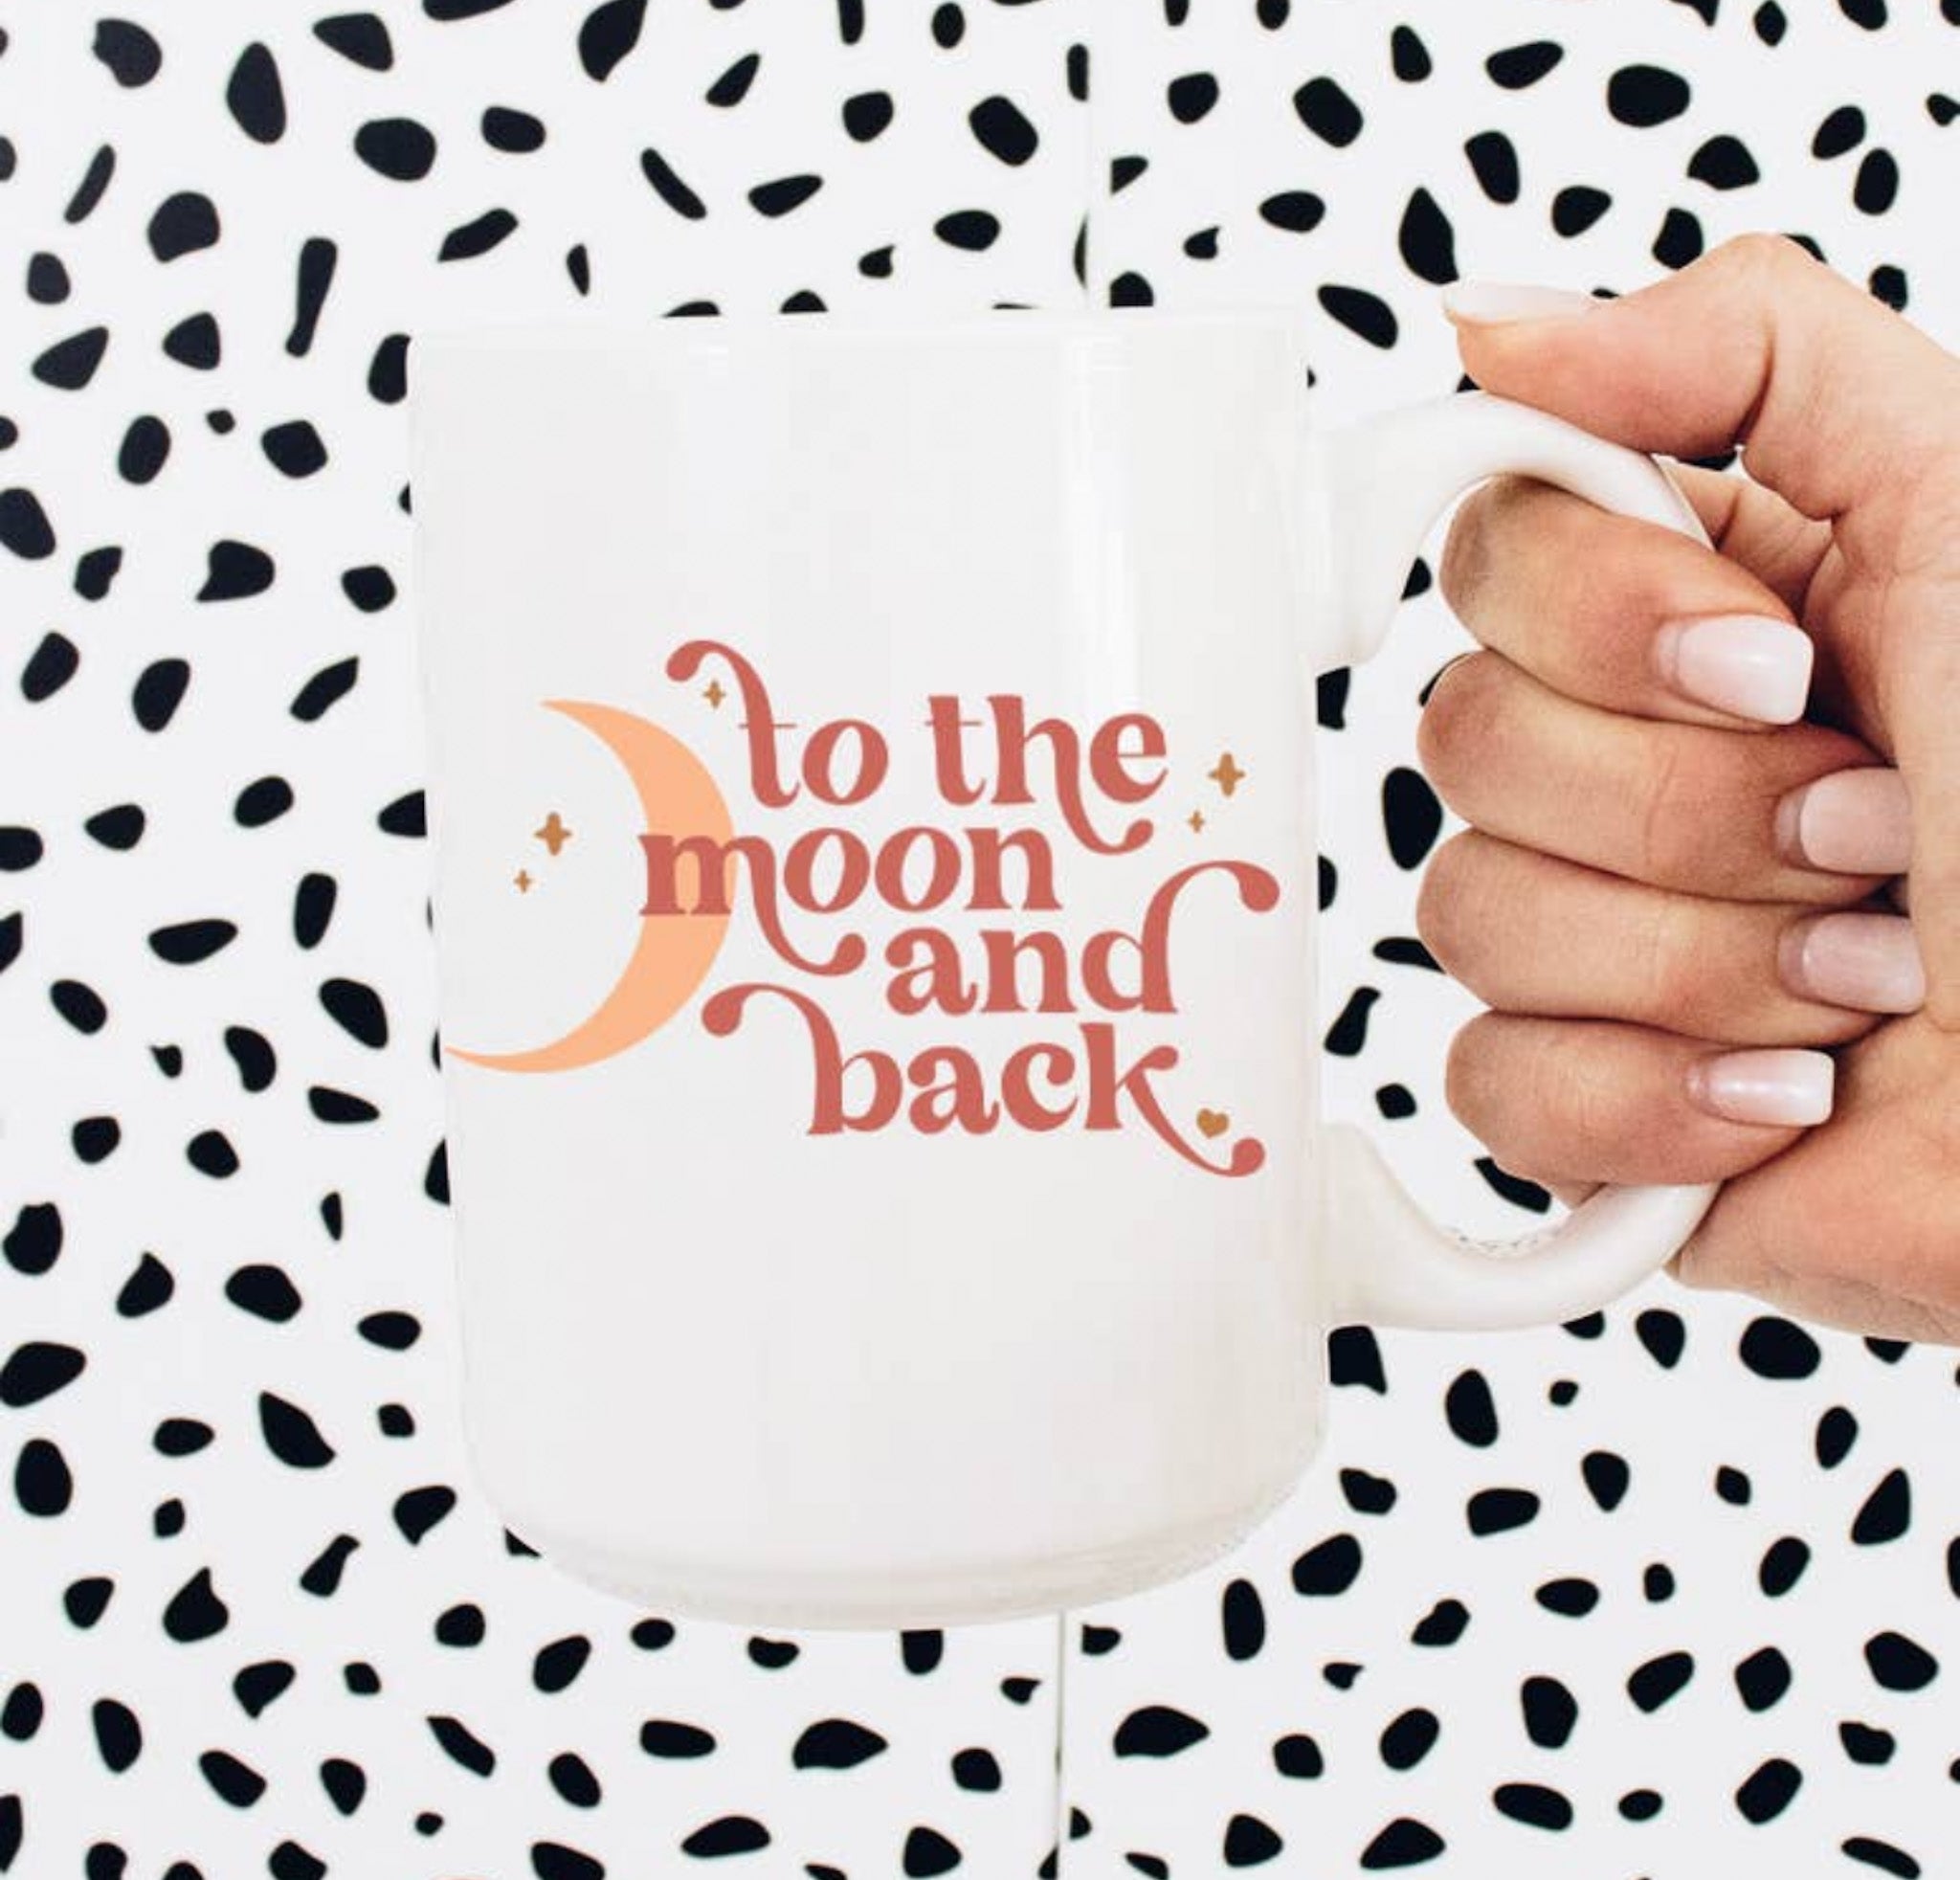 Moon and Back Mug